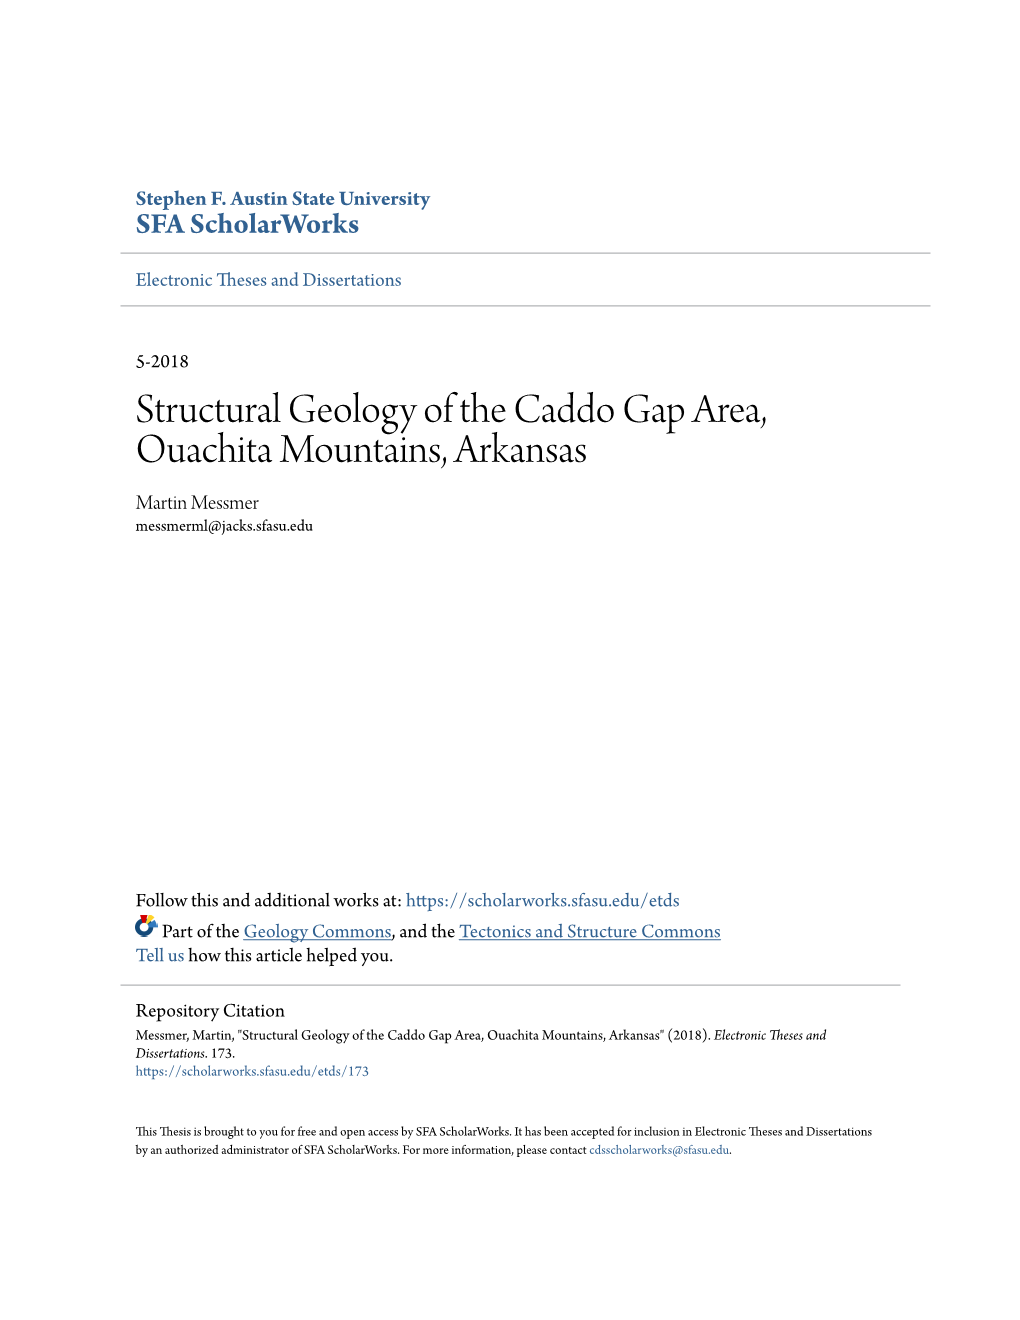 Structural Geology of the Caddo Gap Area, Ouachita Mountains, Arkansas Martin Messmer Messmerml@Jacks.Sfasu.Edu